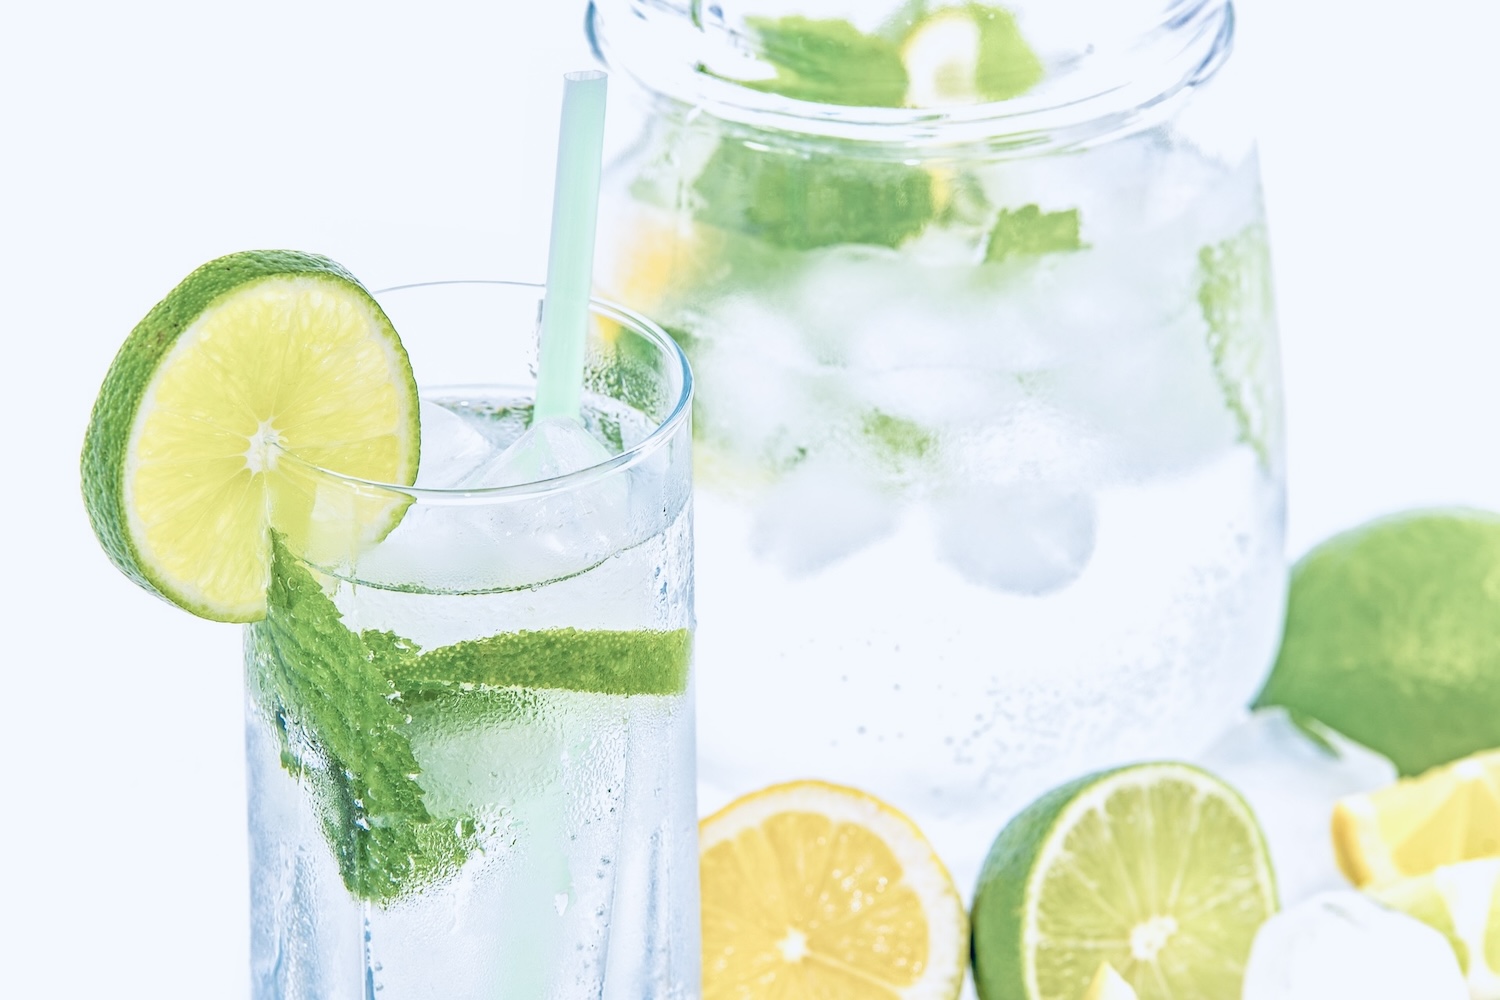 kan en glas met fruitwater als alternatief voor frisdrank